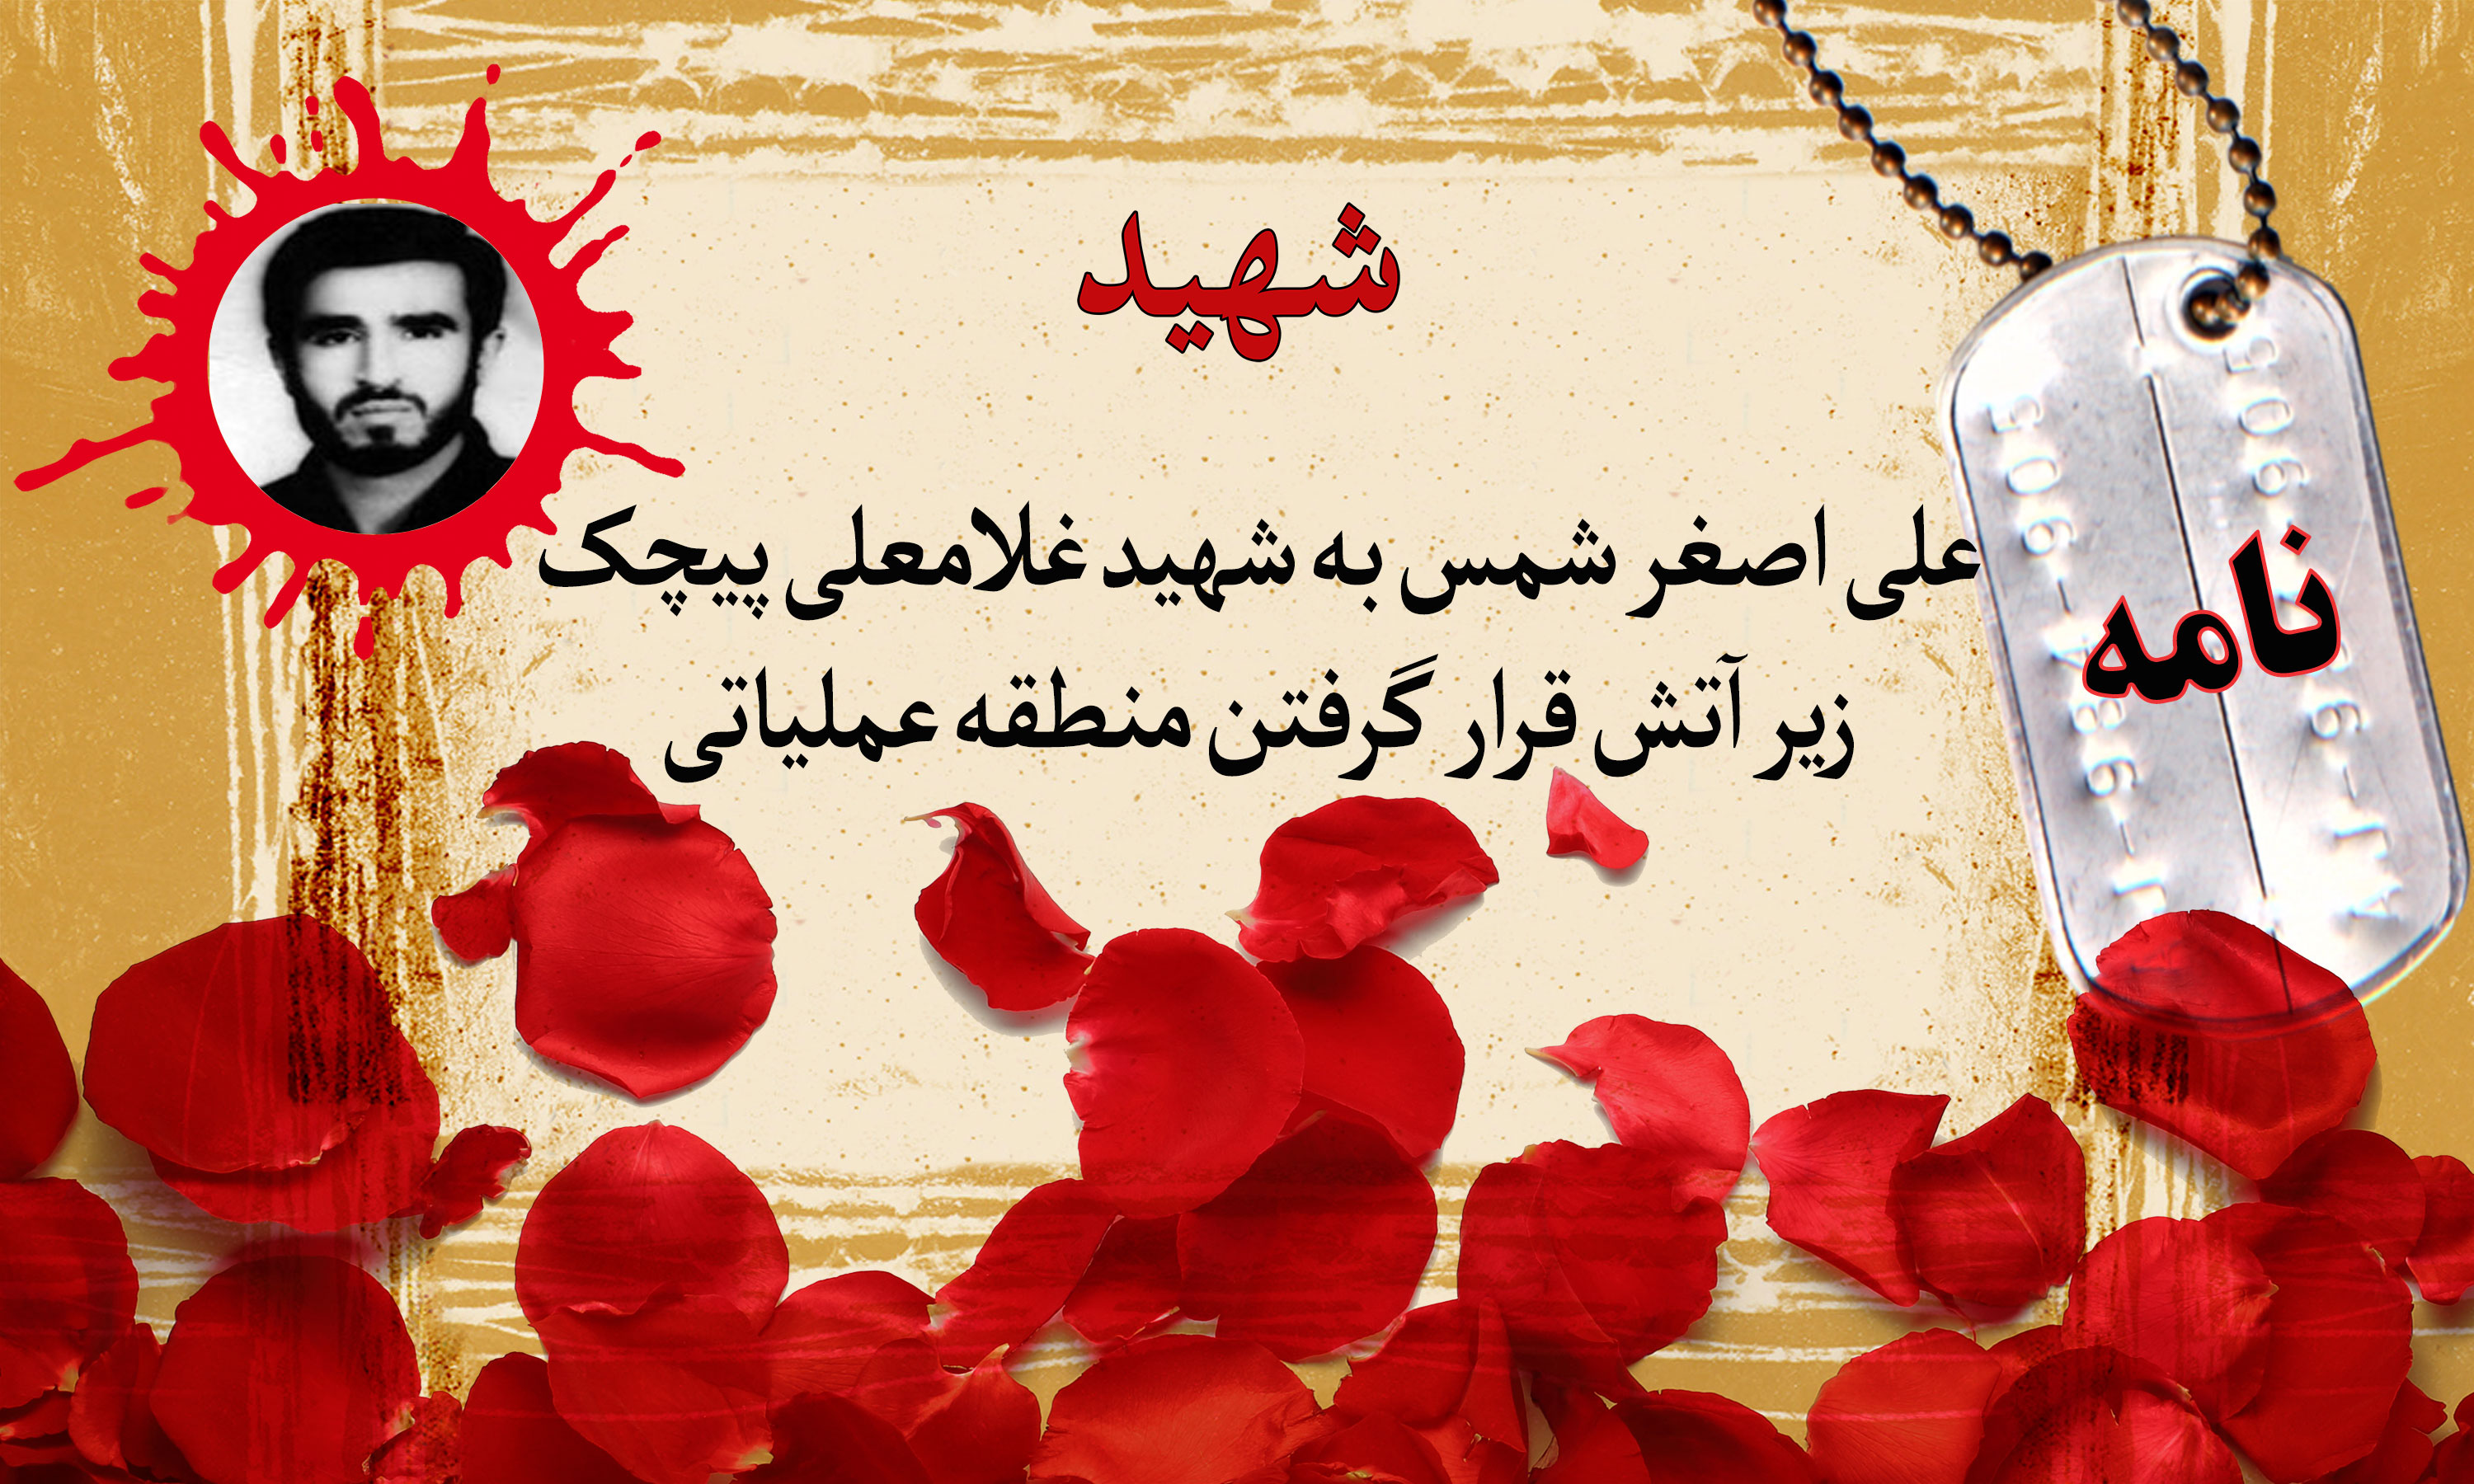 نامه پاسدار شهید علی اصغر شمس به شهید پیچک/ زیر آتش قرار گرفتن منطقه عملیاتی